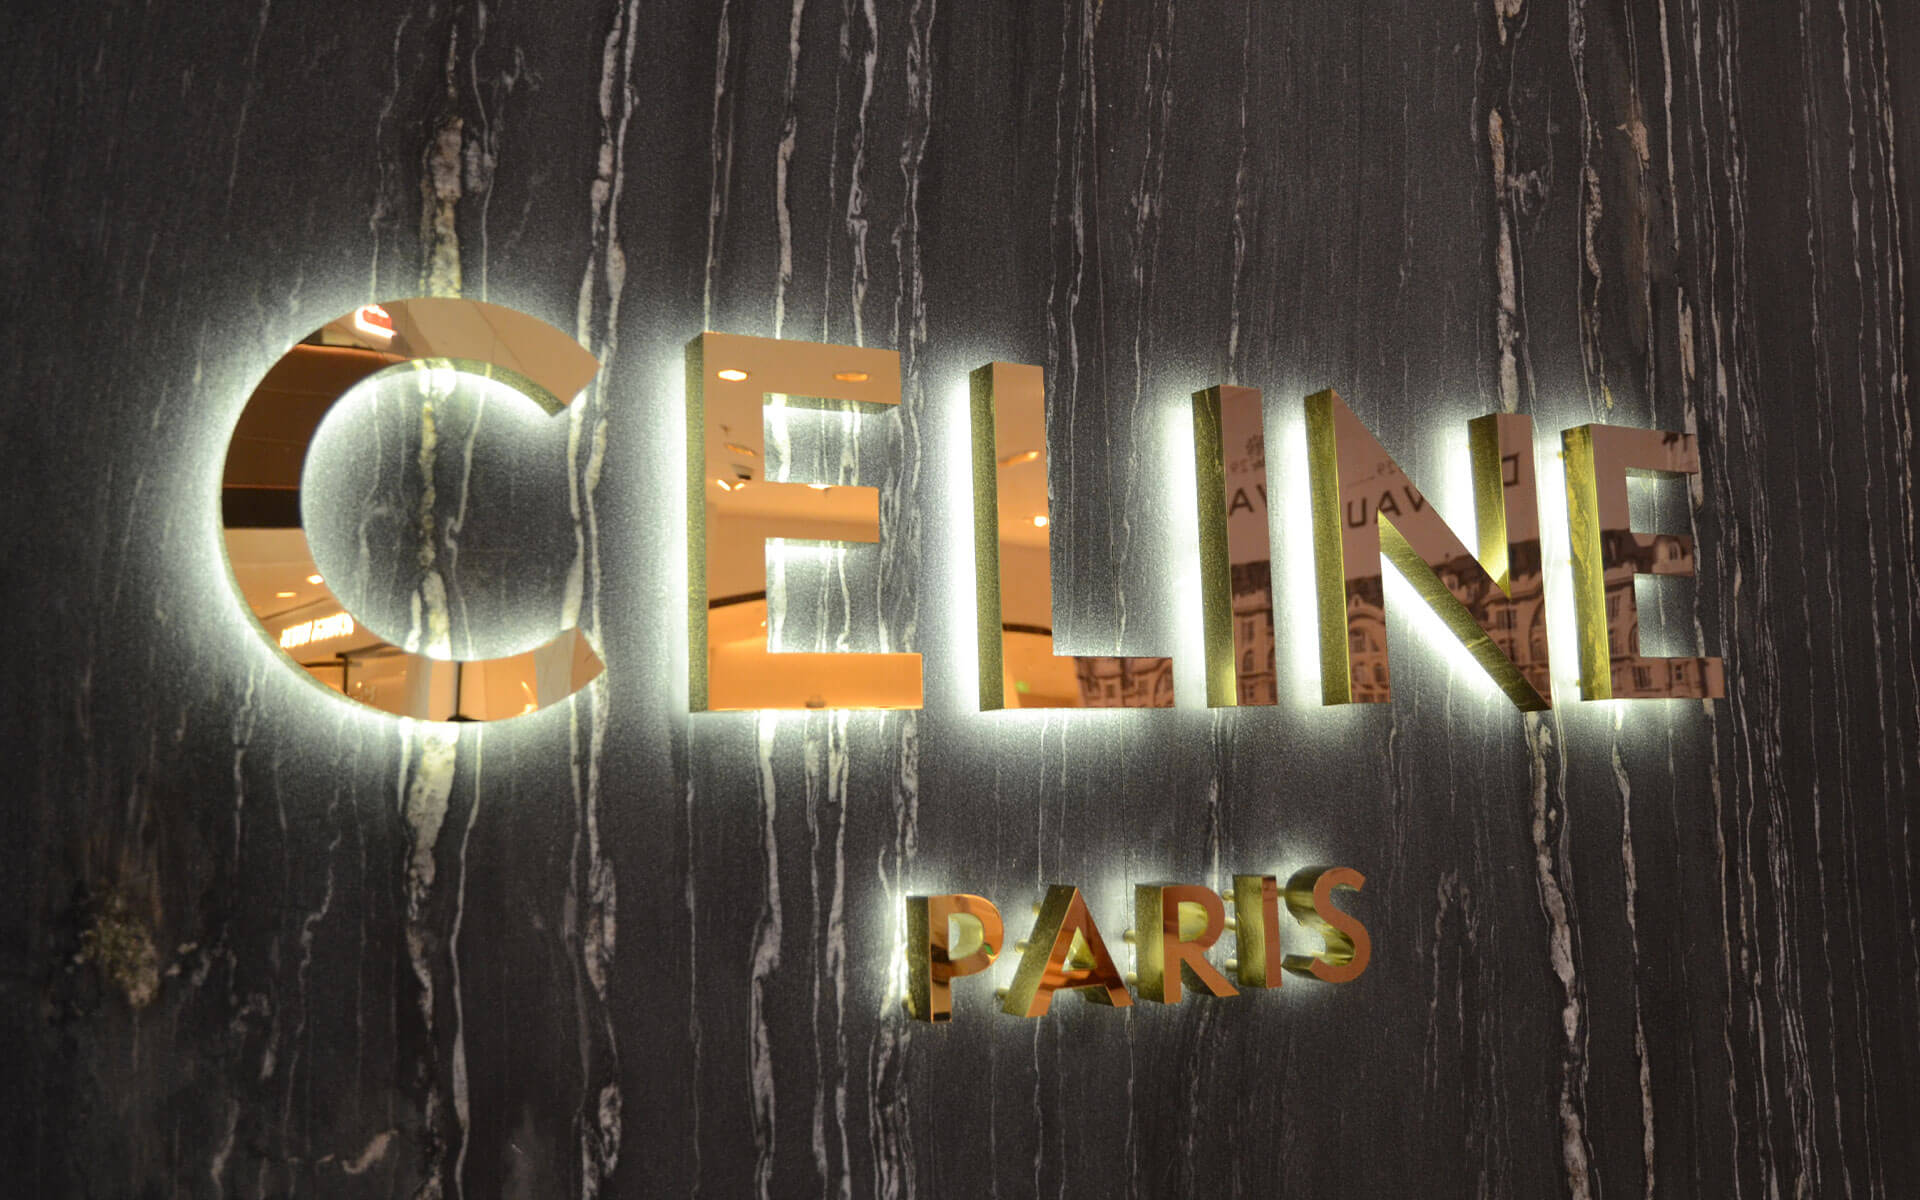 Basic Back-lit Metal Channel Letters for Celine